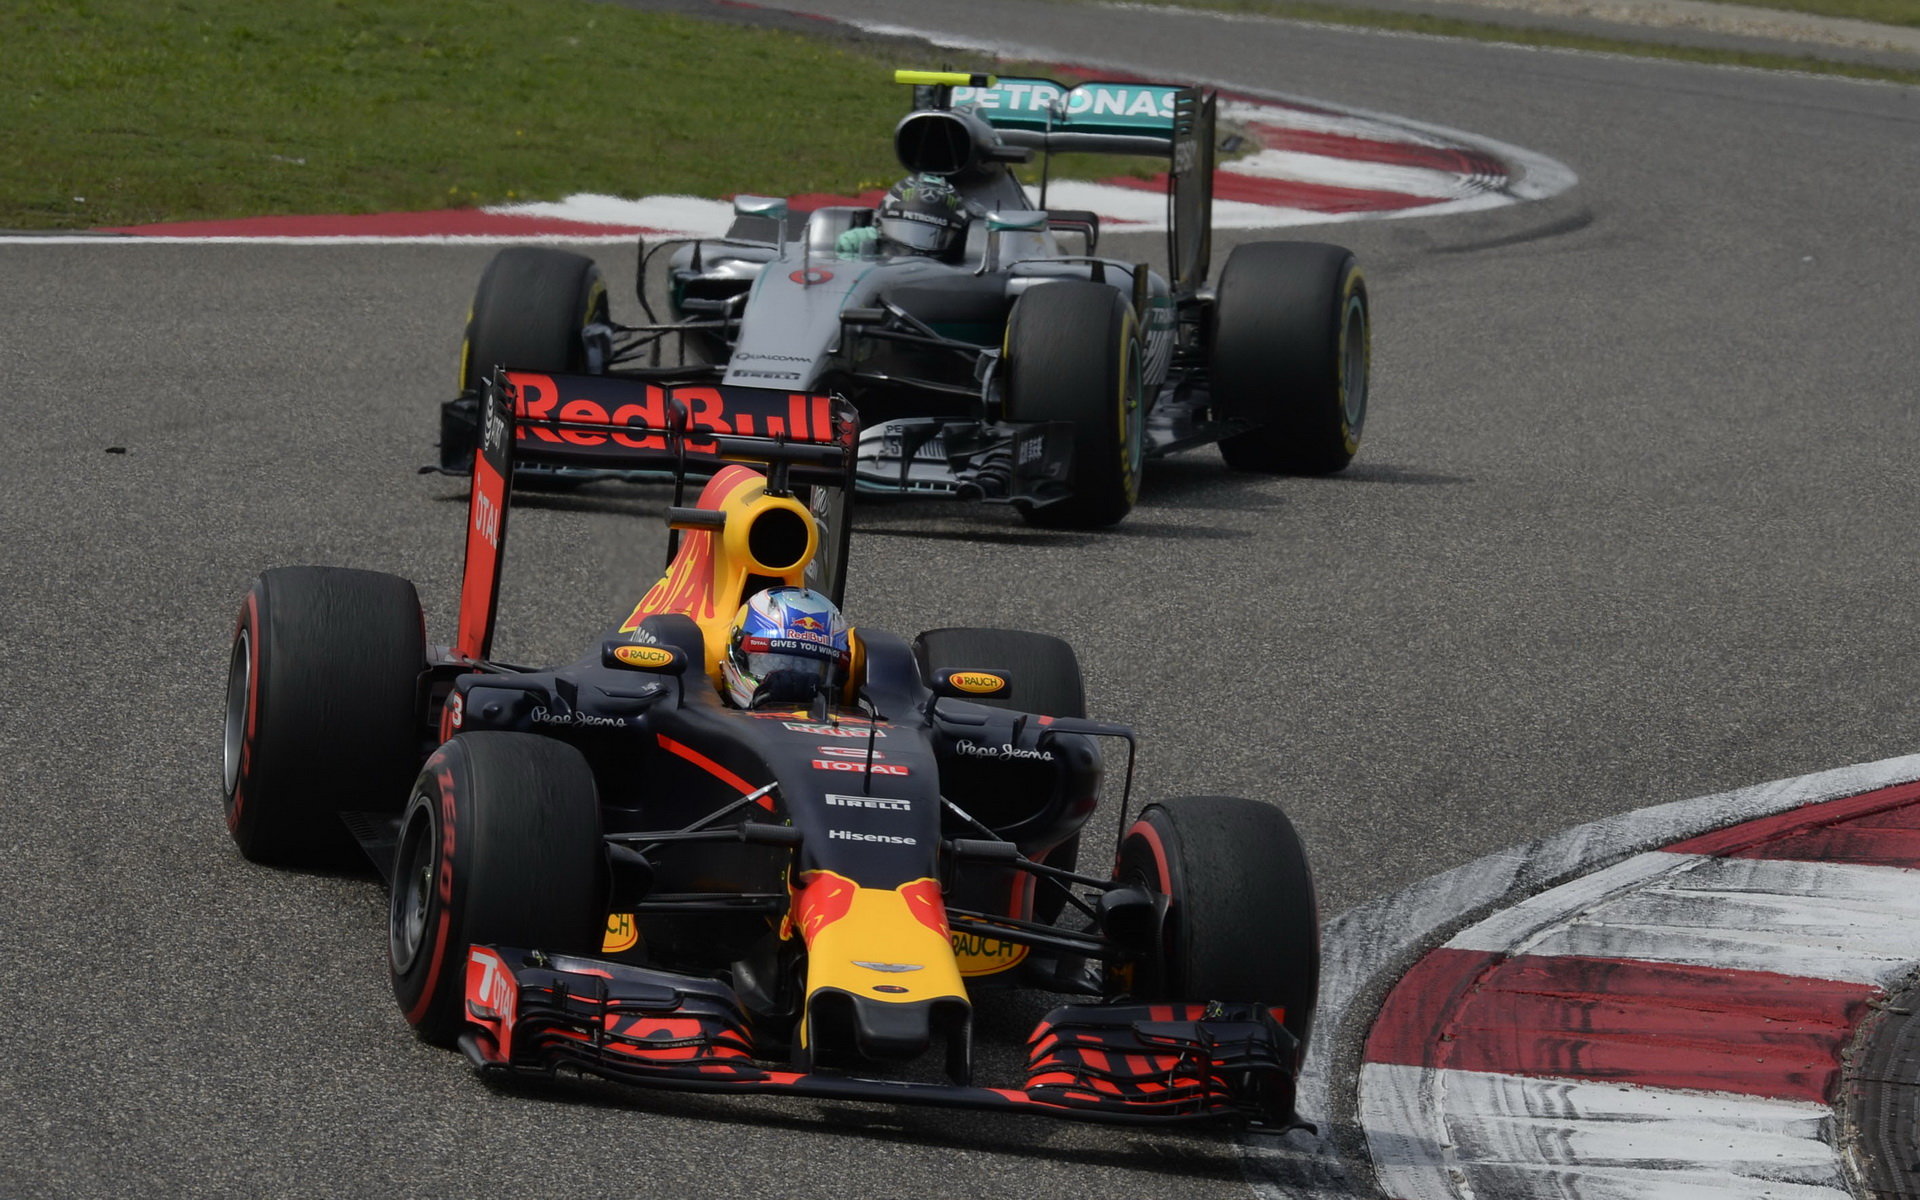 Daniel Ricciardo a Nico Rosberg v závodě v Číně